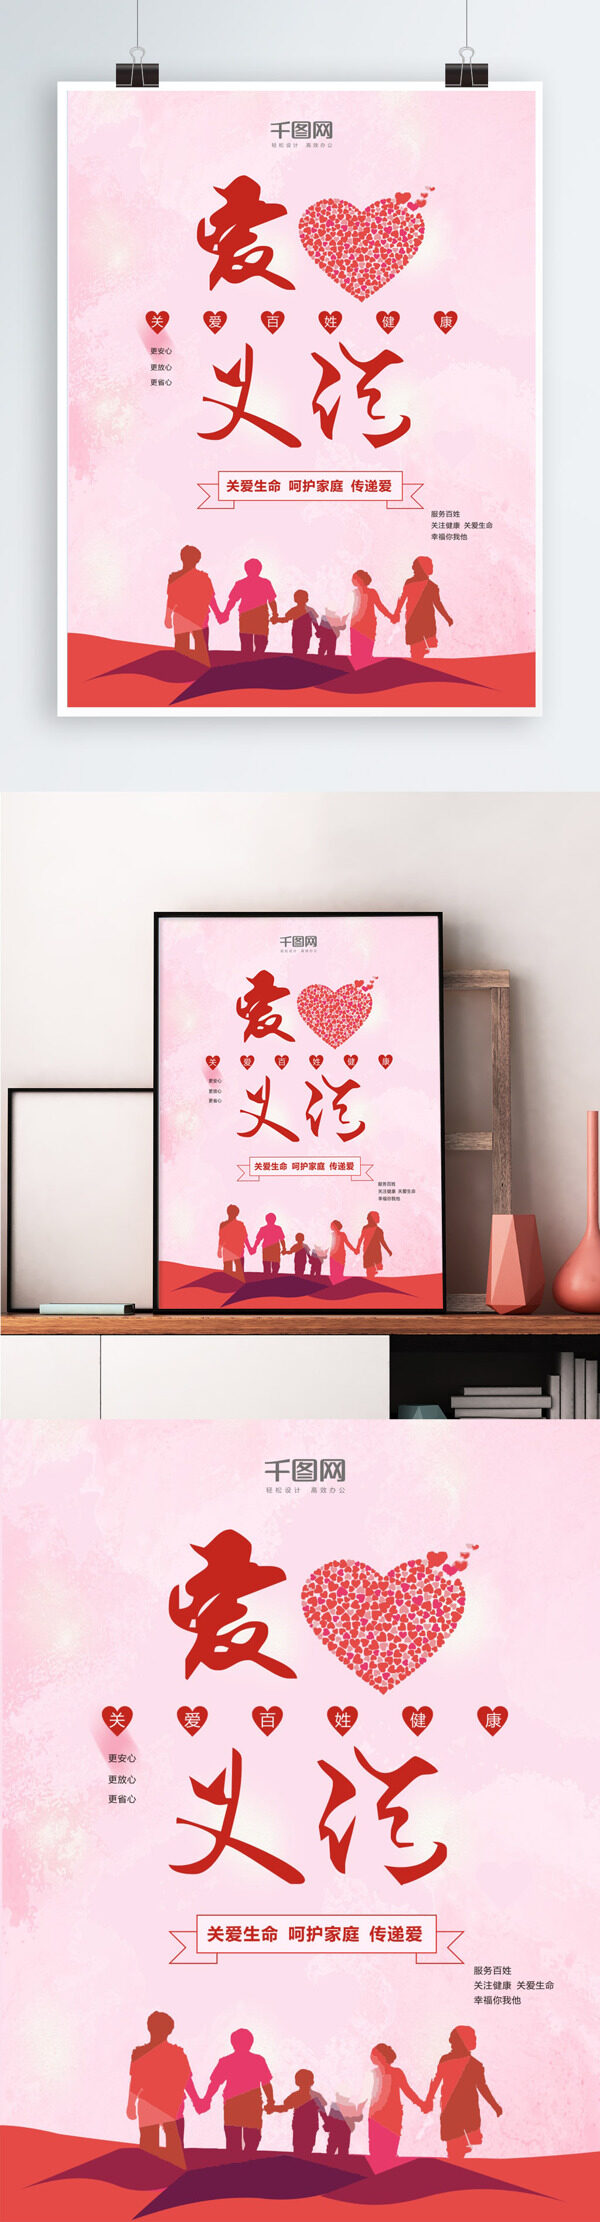 粉色爱心义诊公益活动宣传海报